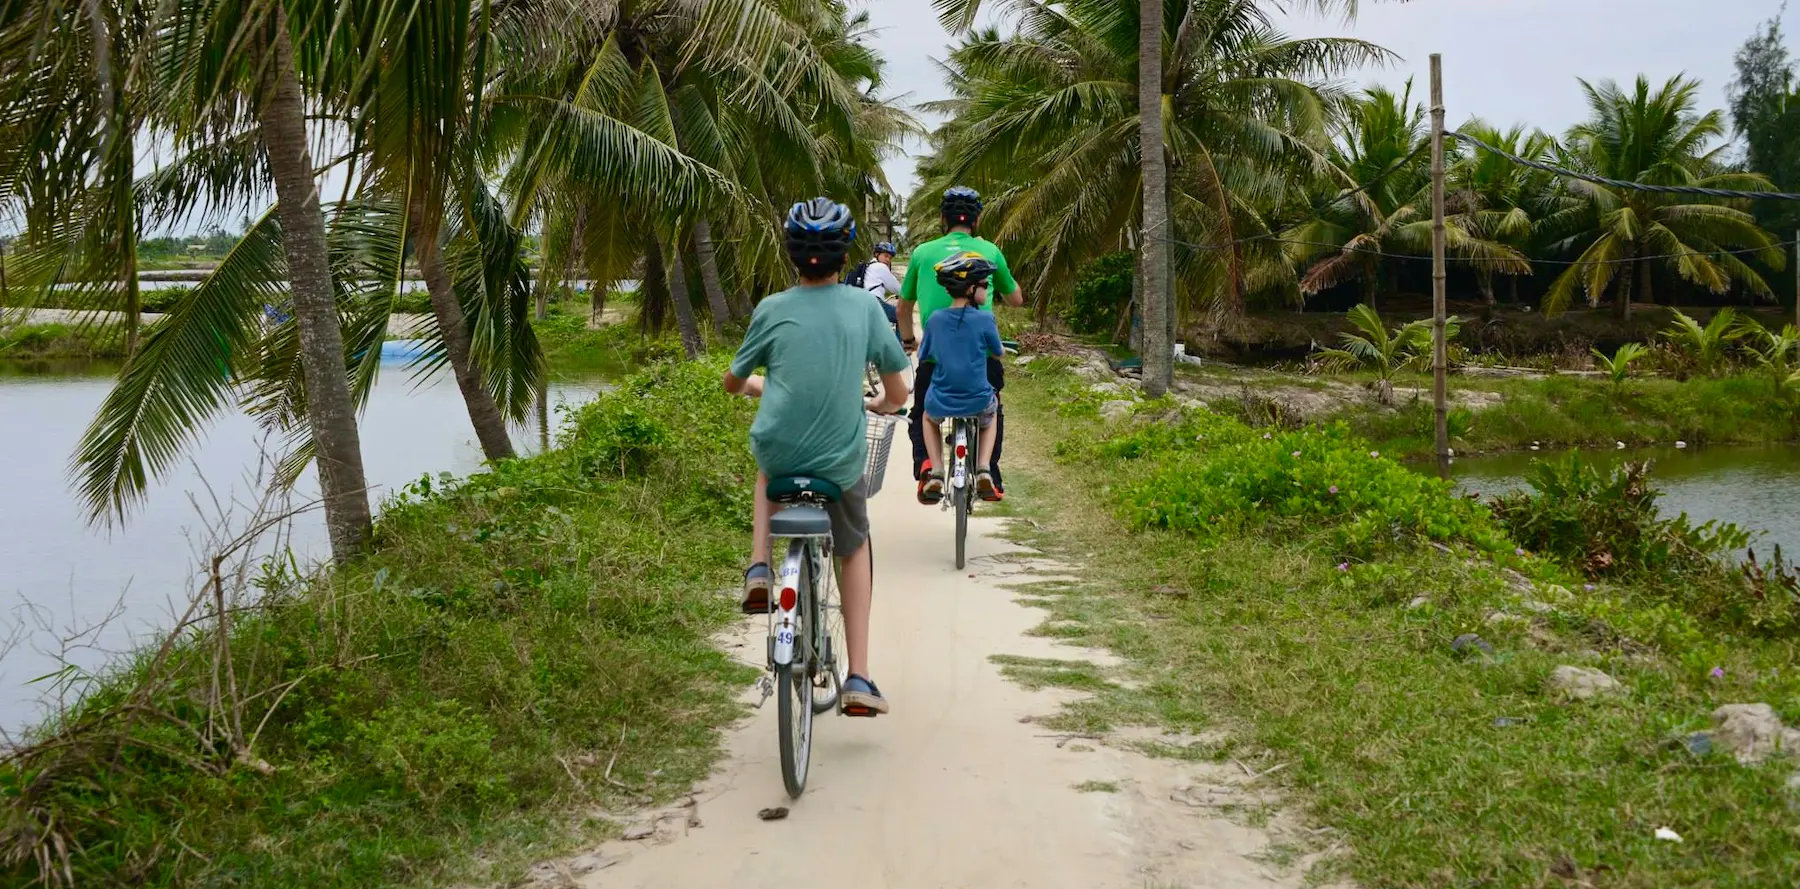 biking in vietnam, worldschooling, extended family travel